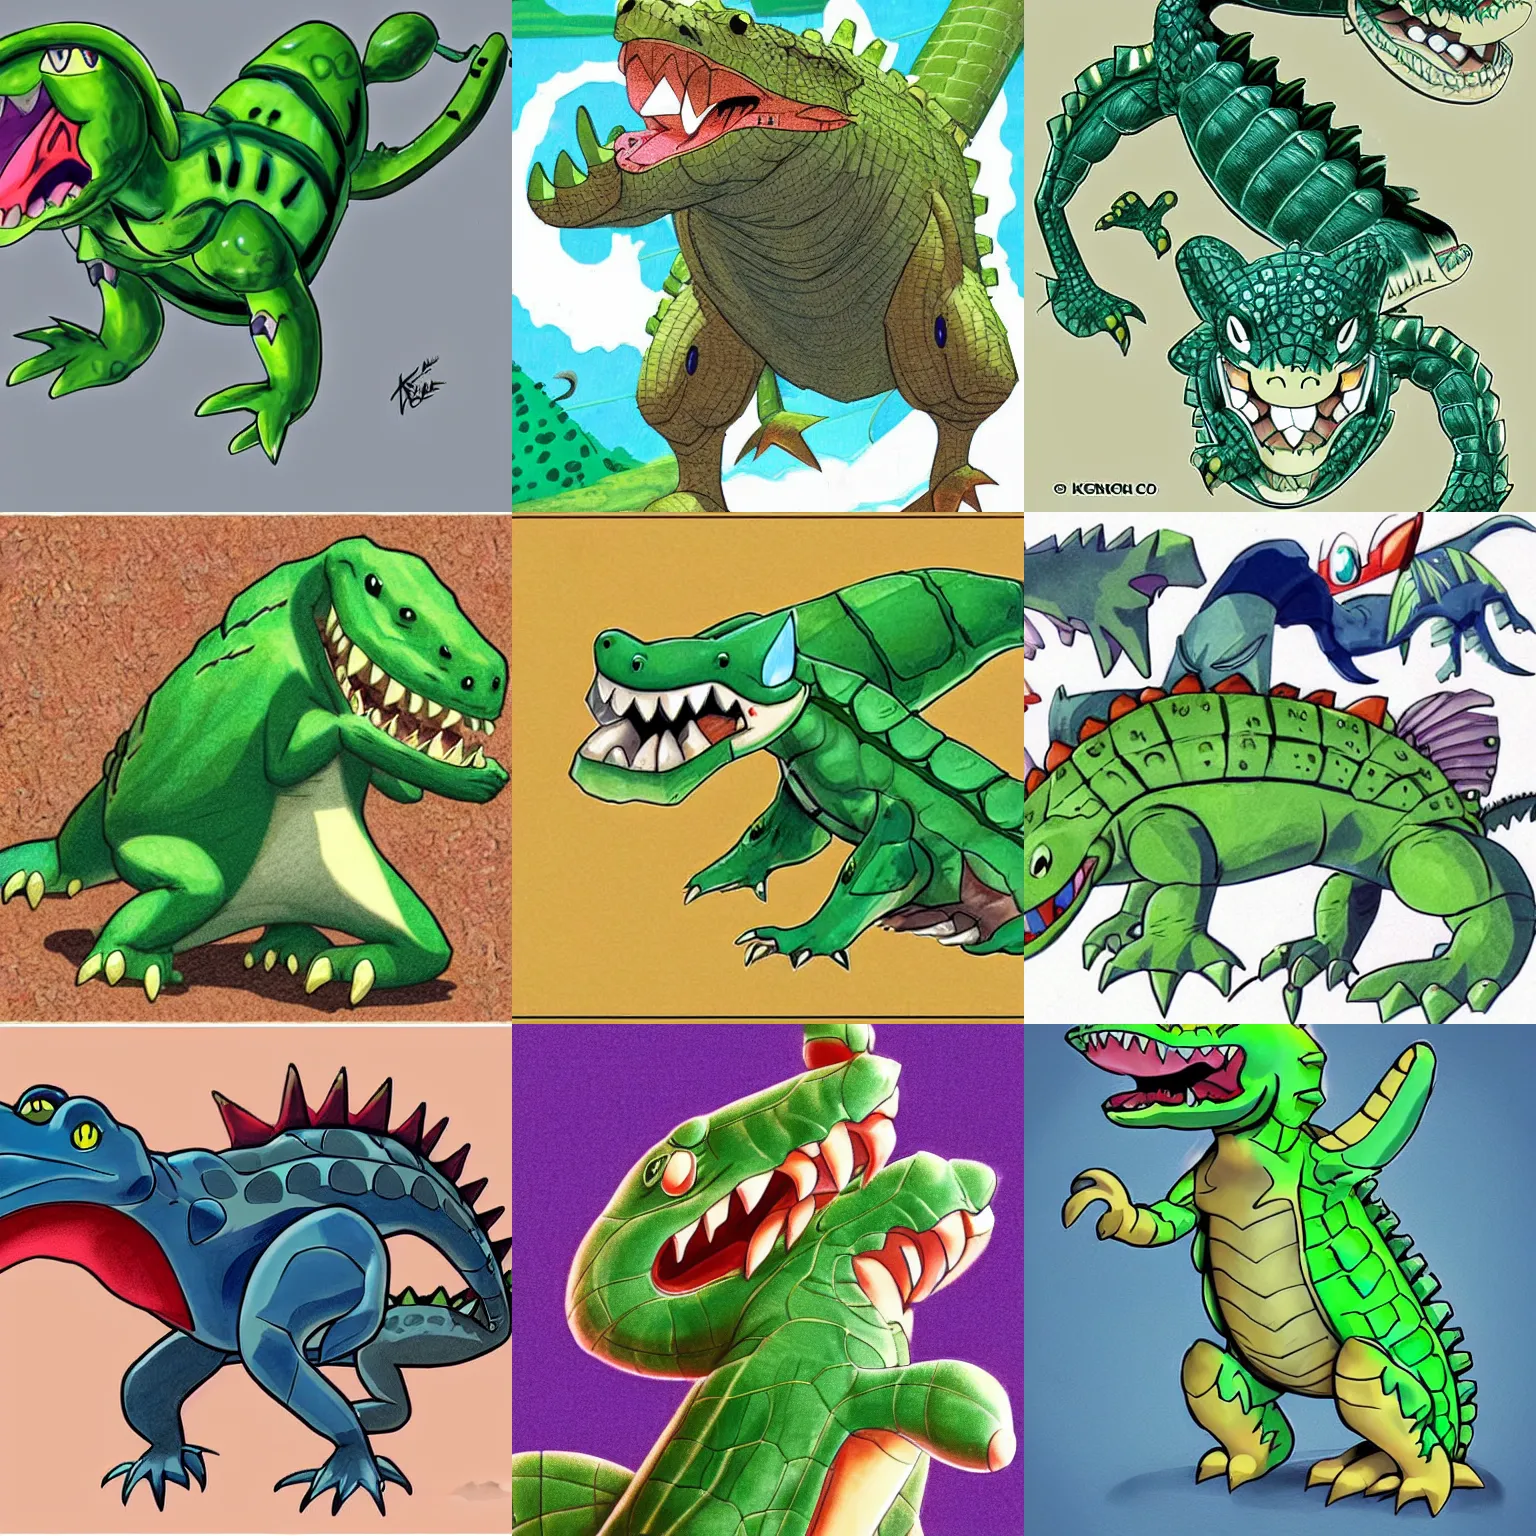 Prompt: a crocodile - inspired pokemon, creature design, concept art, illustration, by ken sugimori